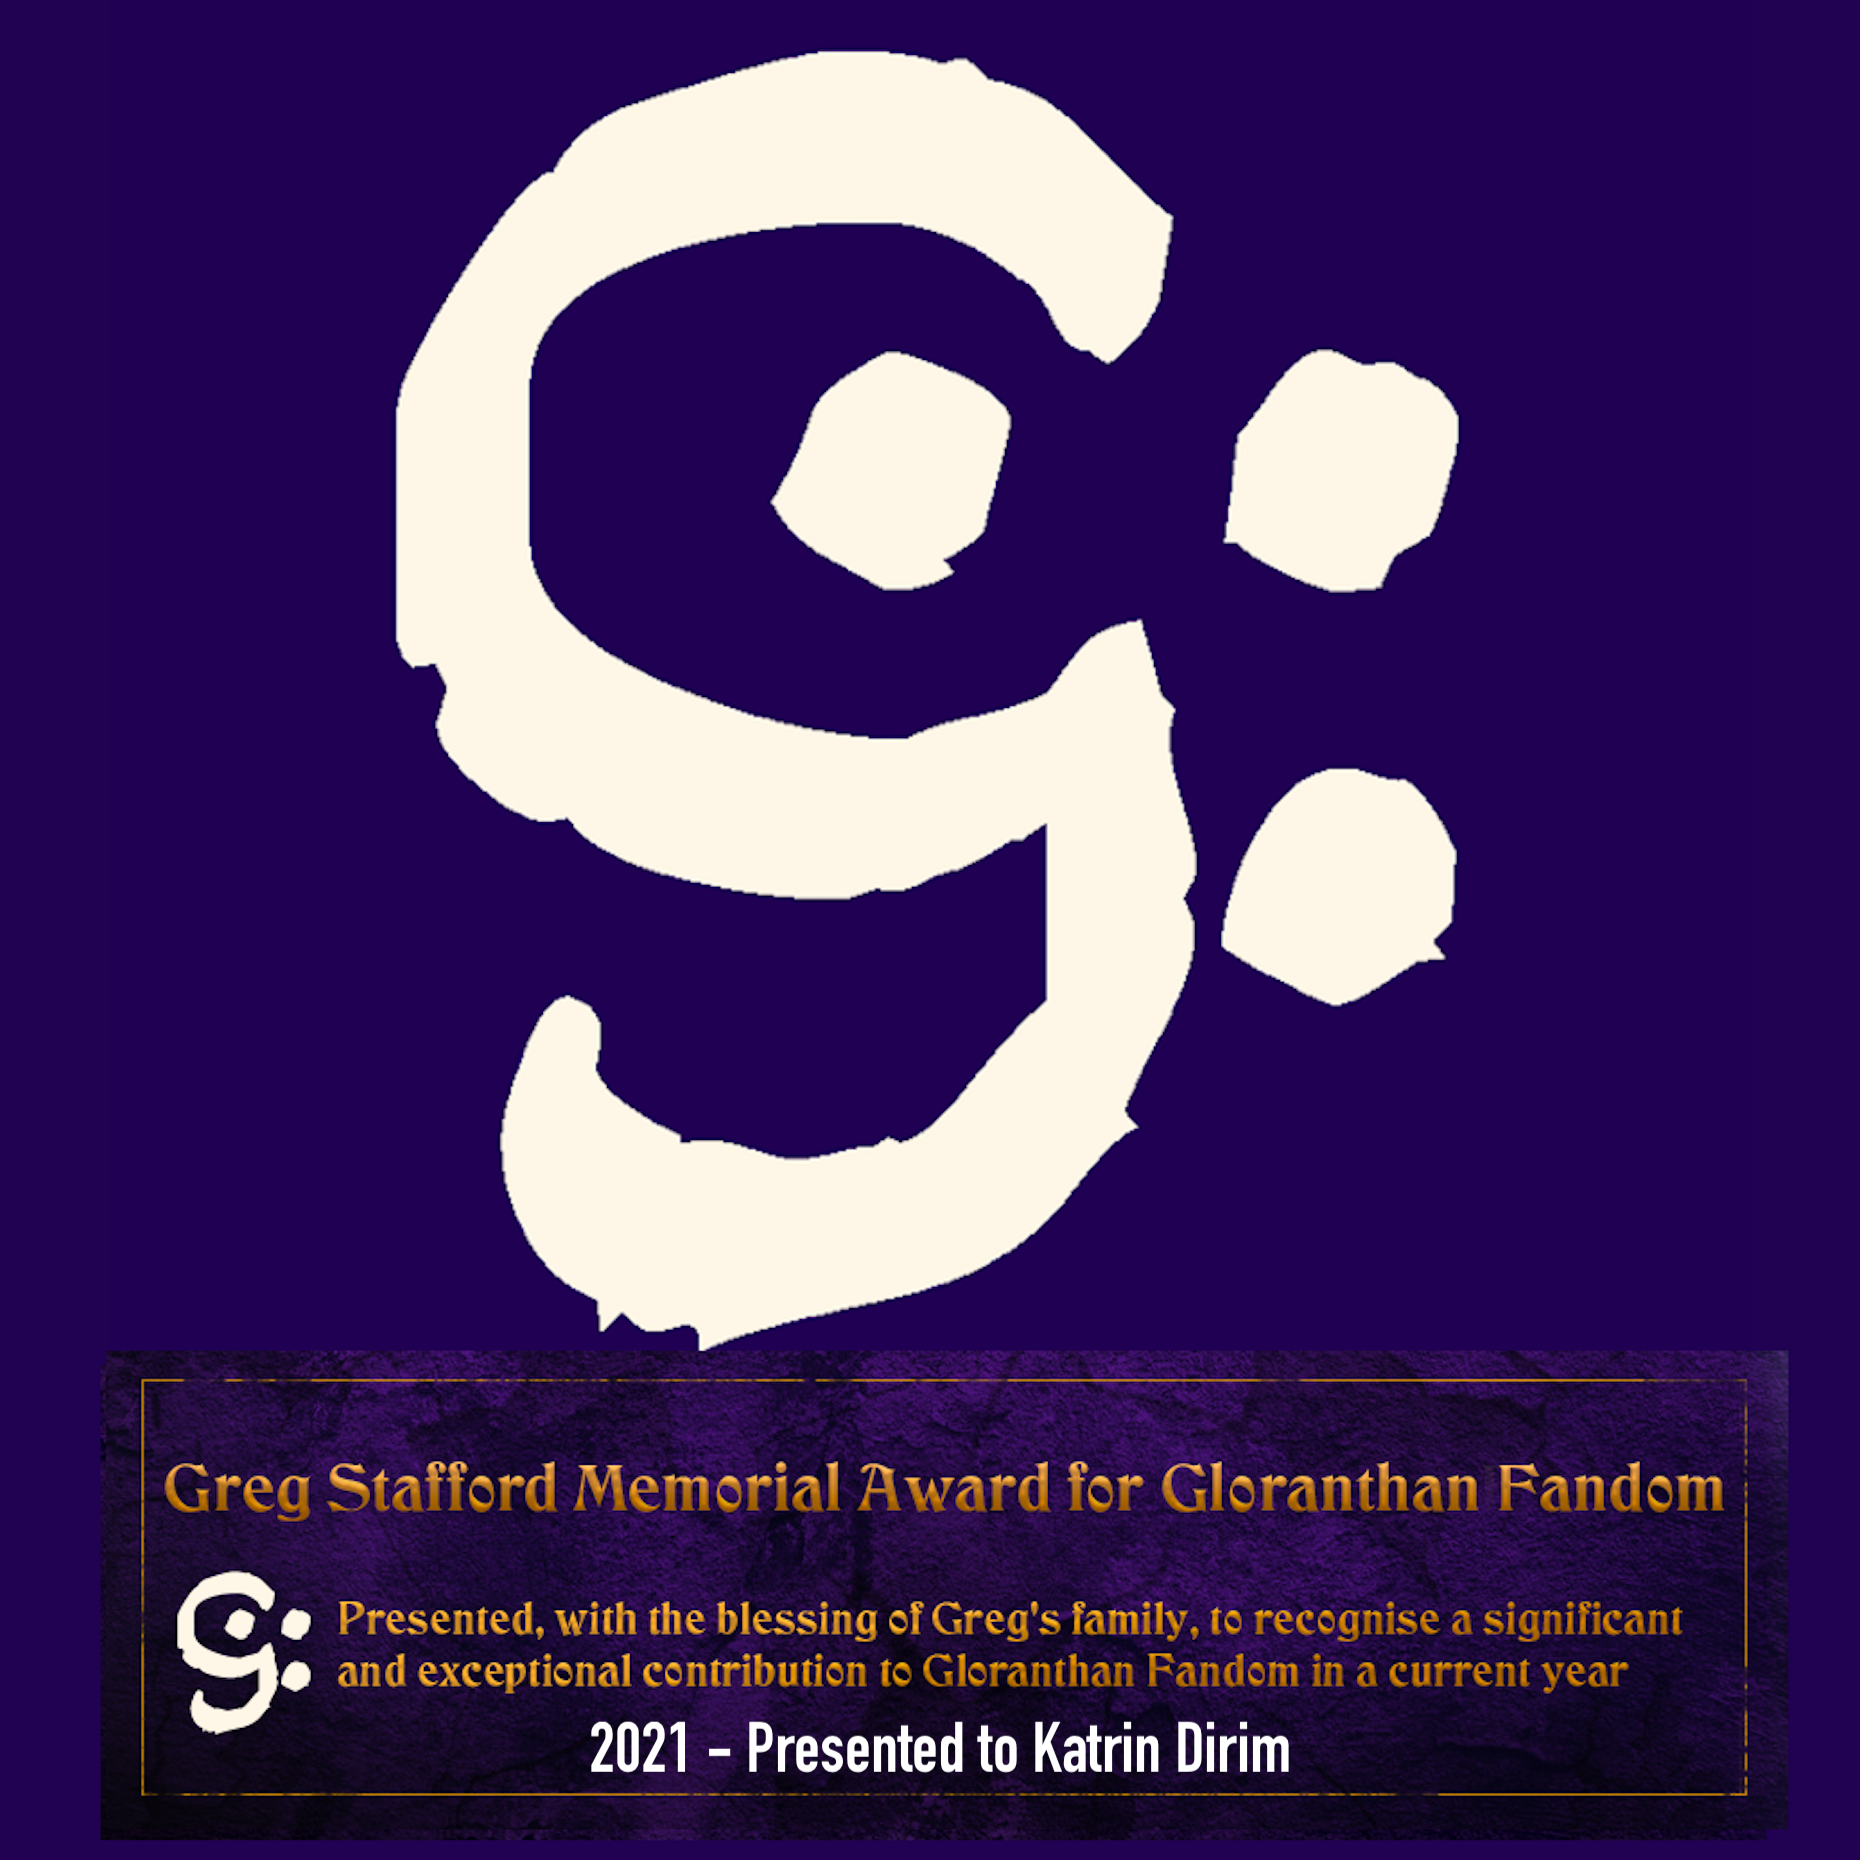 Greg Stafford Memorial Award for Gloranthan Fandom 2021